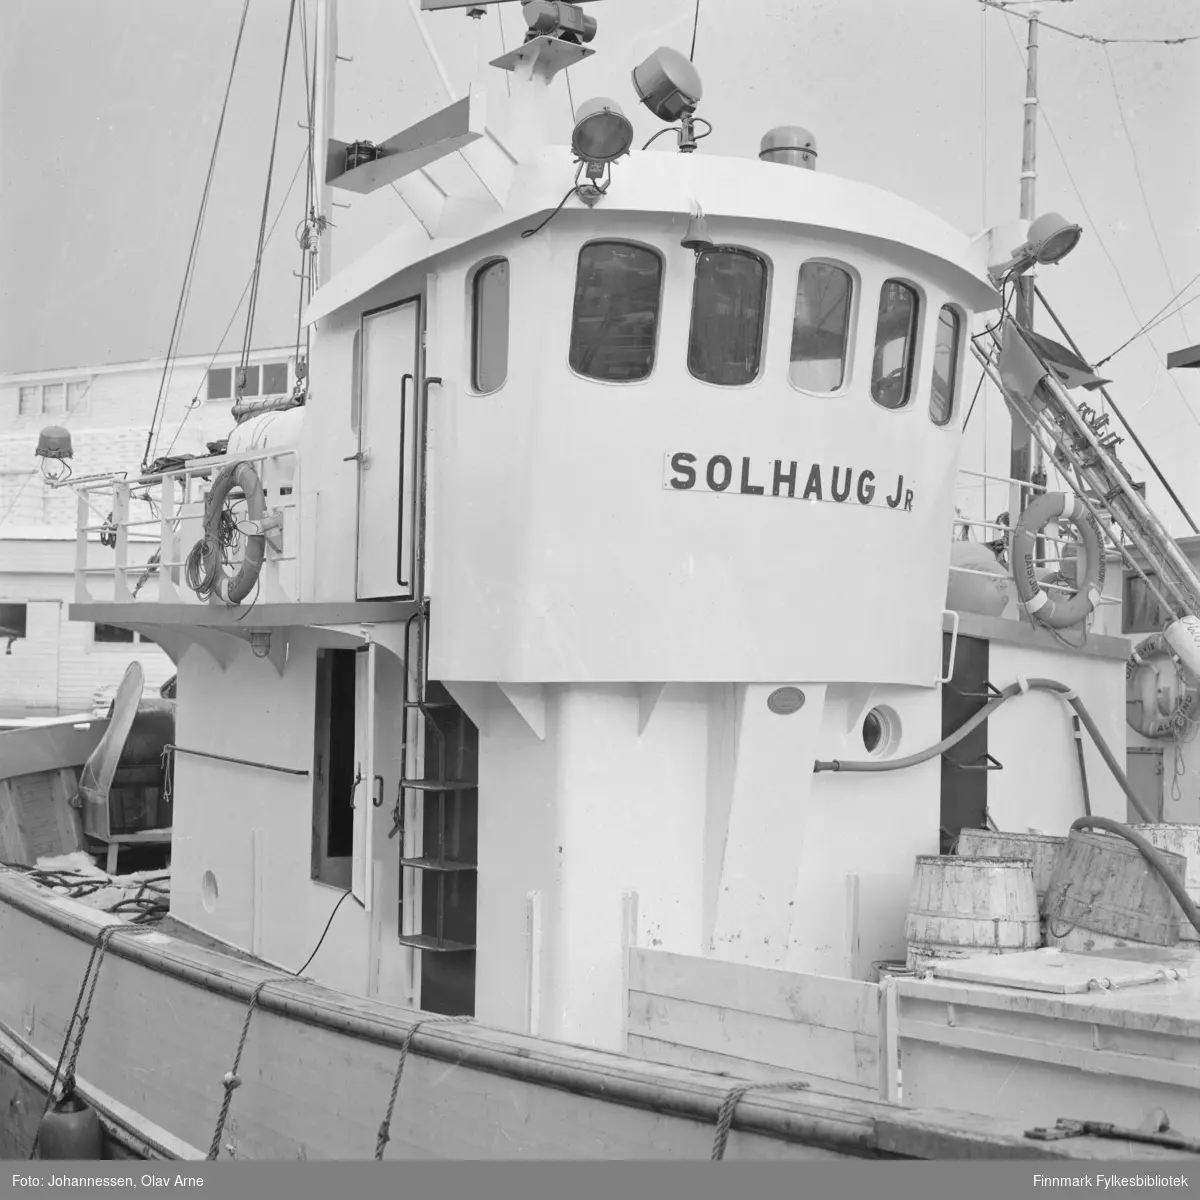 Påskrift: Bilde viser nybåten M/K "Solhaug jr." på havna i Båtsfjord 

Båten har nummer F-75.BD malt på høyre side (vises ikke på foto)

I bakgrunnen kan man se Nils H. Nilsens fiskebruk 